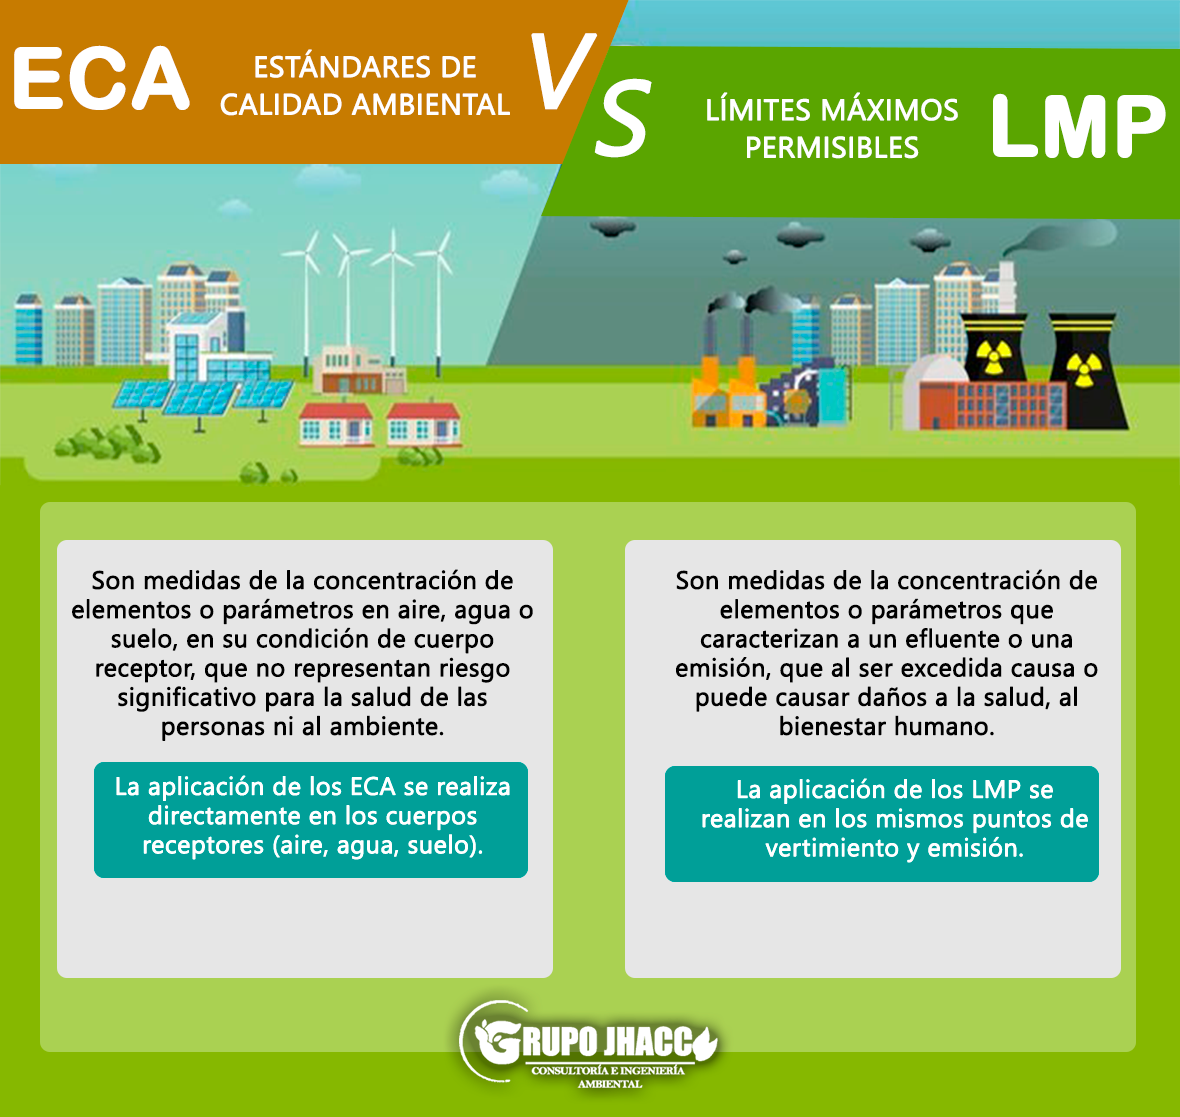 Imagen comparativa de ECAs y LMPs